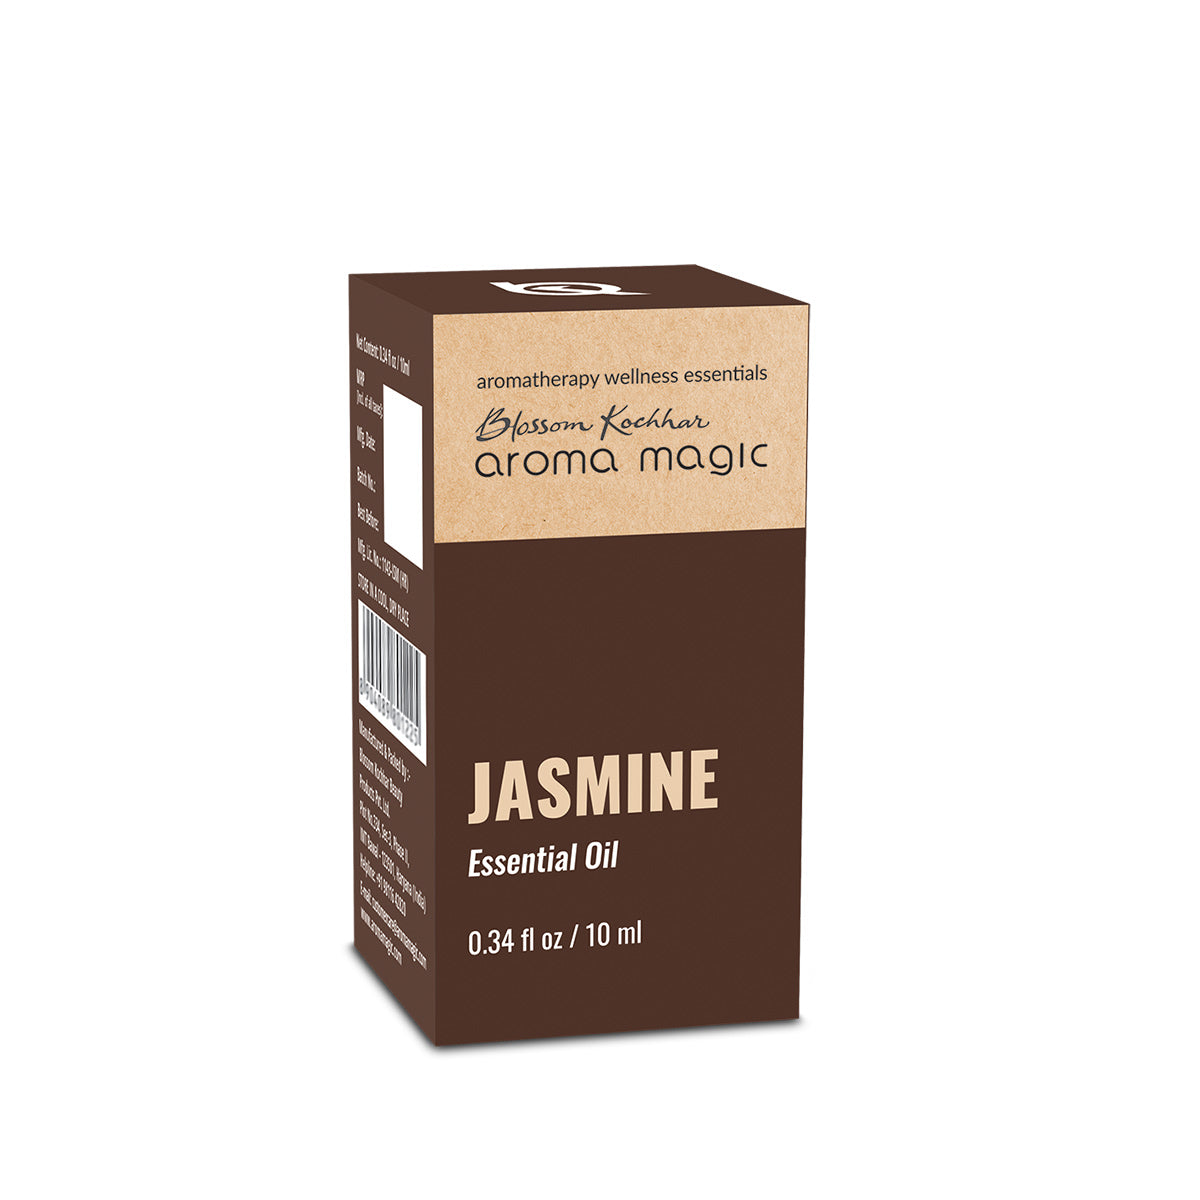 Jasmine Essential Oil - Aroma Magic